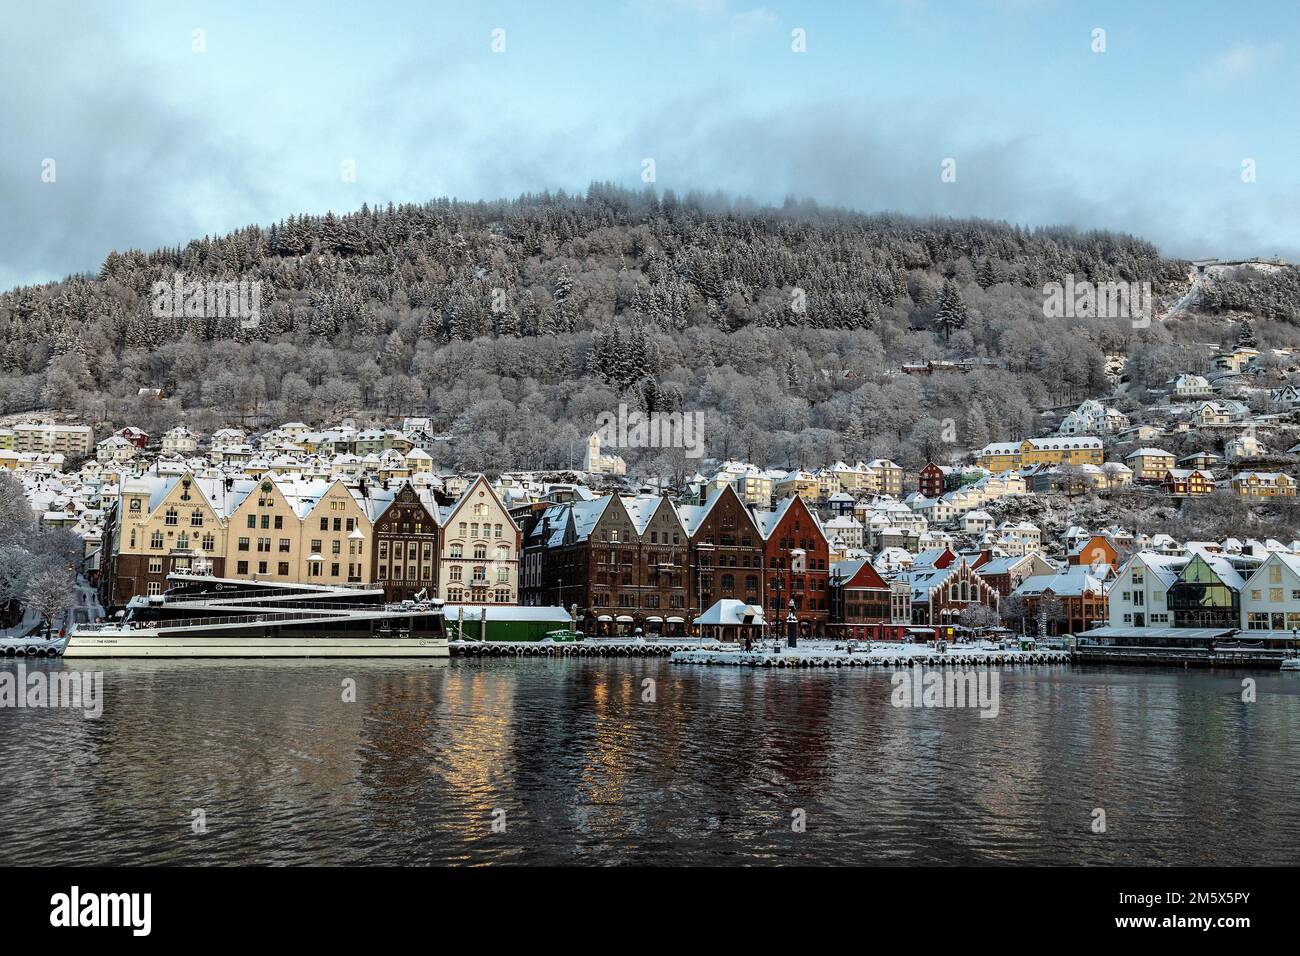 Aus einem Teil von Bryggen, dem alten Hafengebiet von bergen, Norwegen. Besichtigungsschiff Vision of the Fjords. Mount Floyen im Hintergrund. Eine dunkle, wi Stockfoto